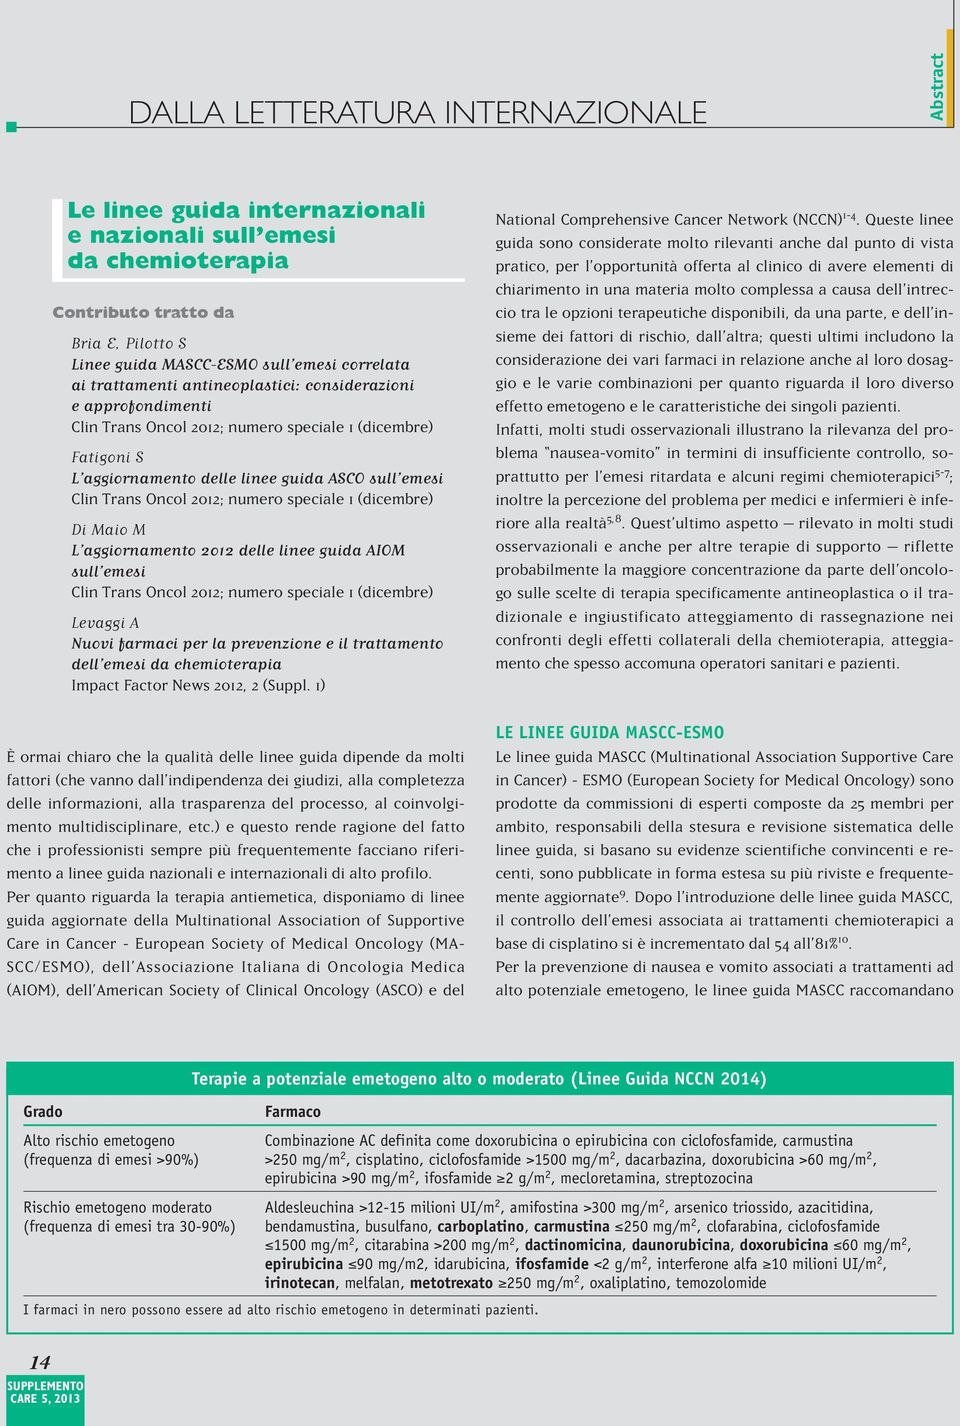 numero speciale 1 (dicembre) Di Maio M L aggiornamento 2012 delle linee guida AIOM sull emesi Clin Trans Oncol 2012; numero speciale 1 (dicembre) Levaggi A Nuovi farmaci per la prevenzione e il